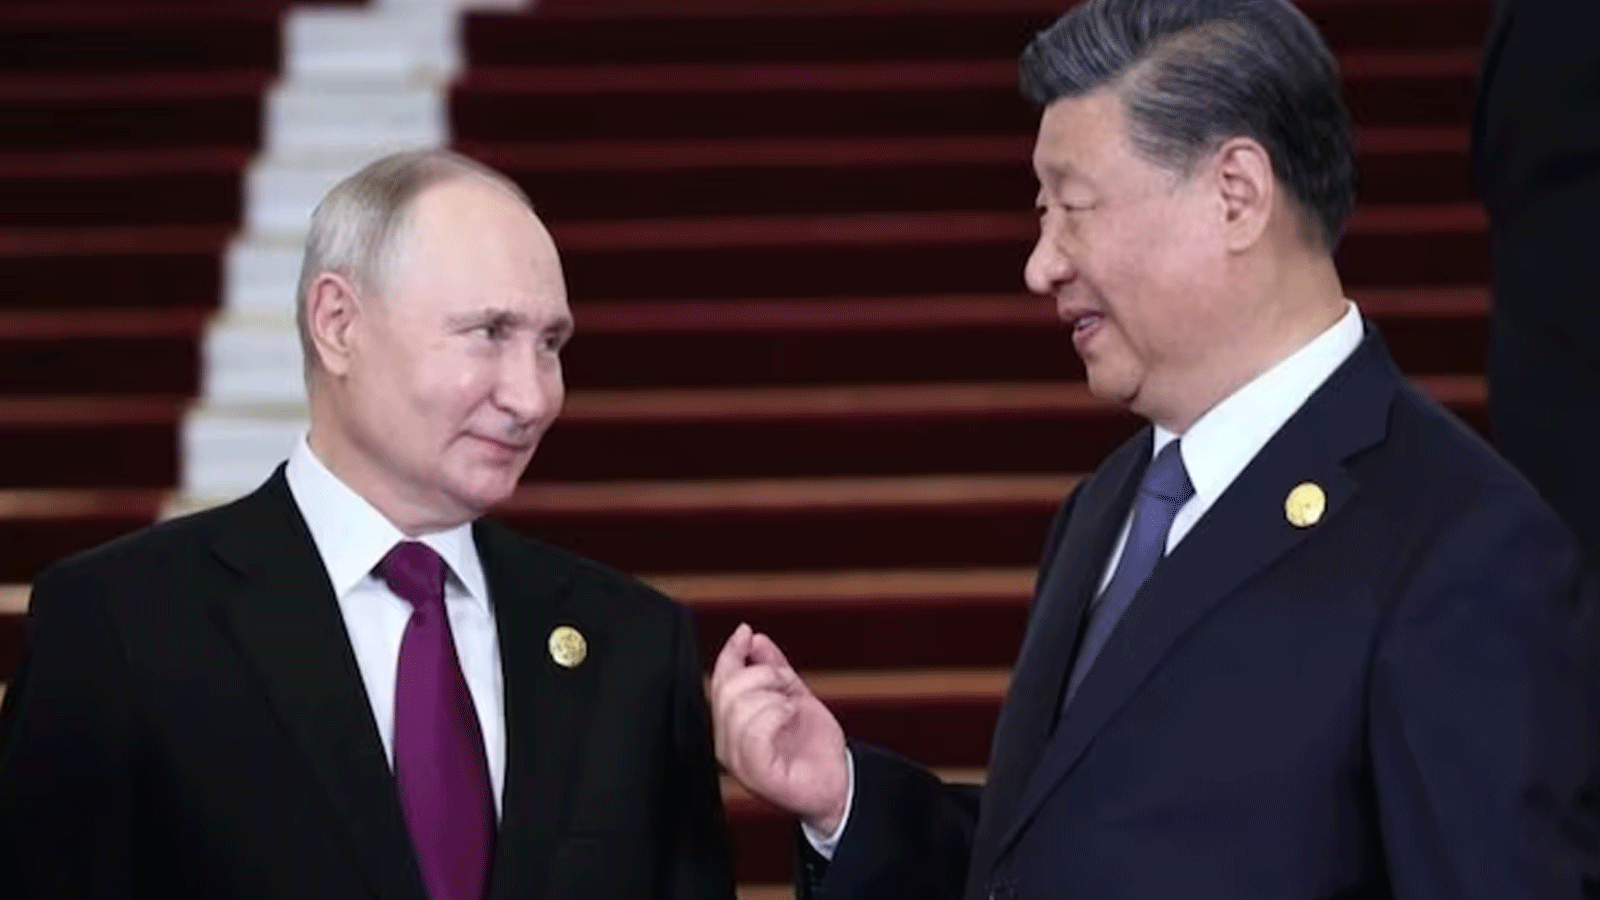 الرئيسان الصيني شي جينبينغ والروسي فلاديمير بوتين يتحادثان على هامش قمة 